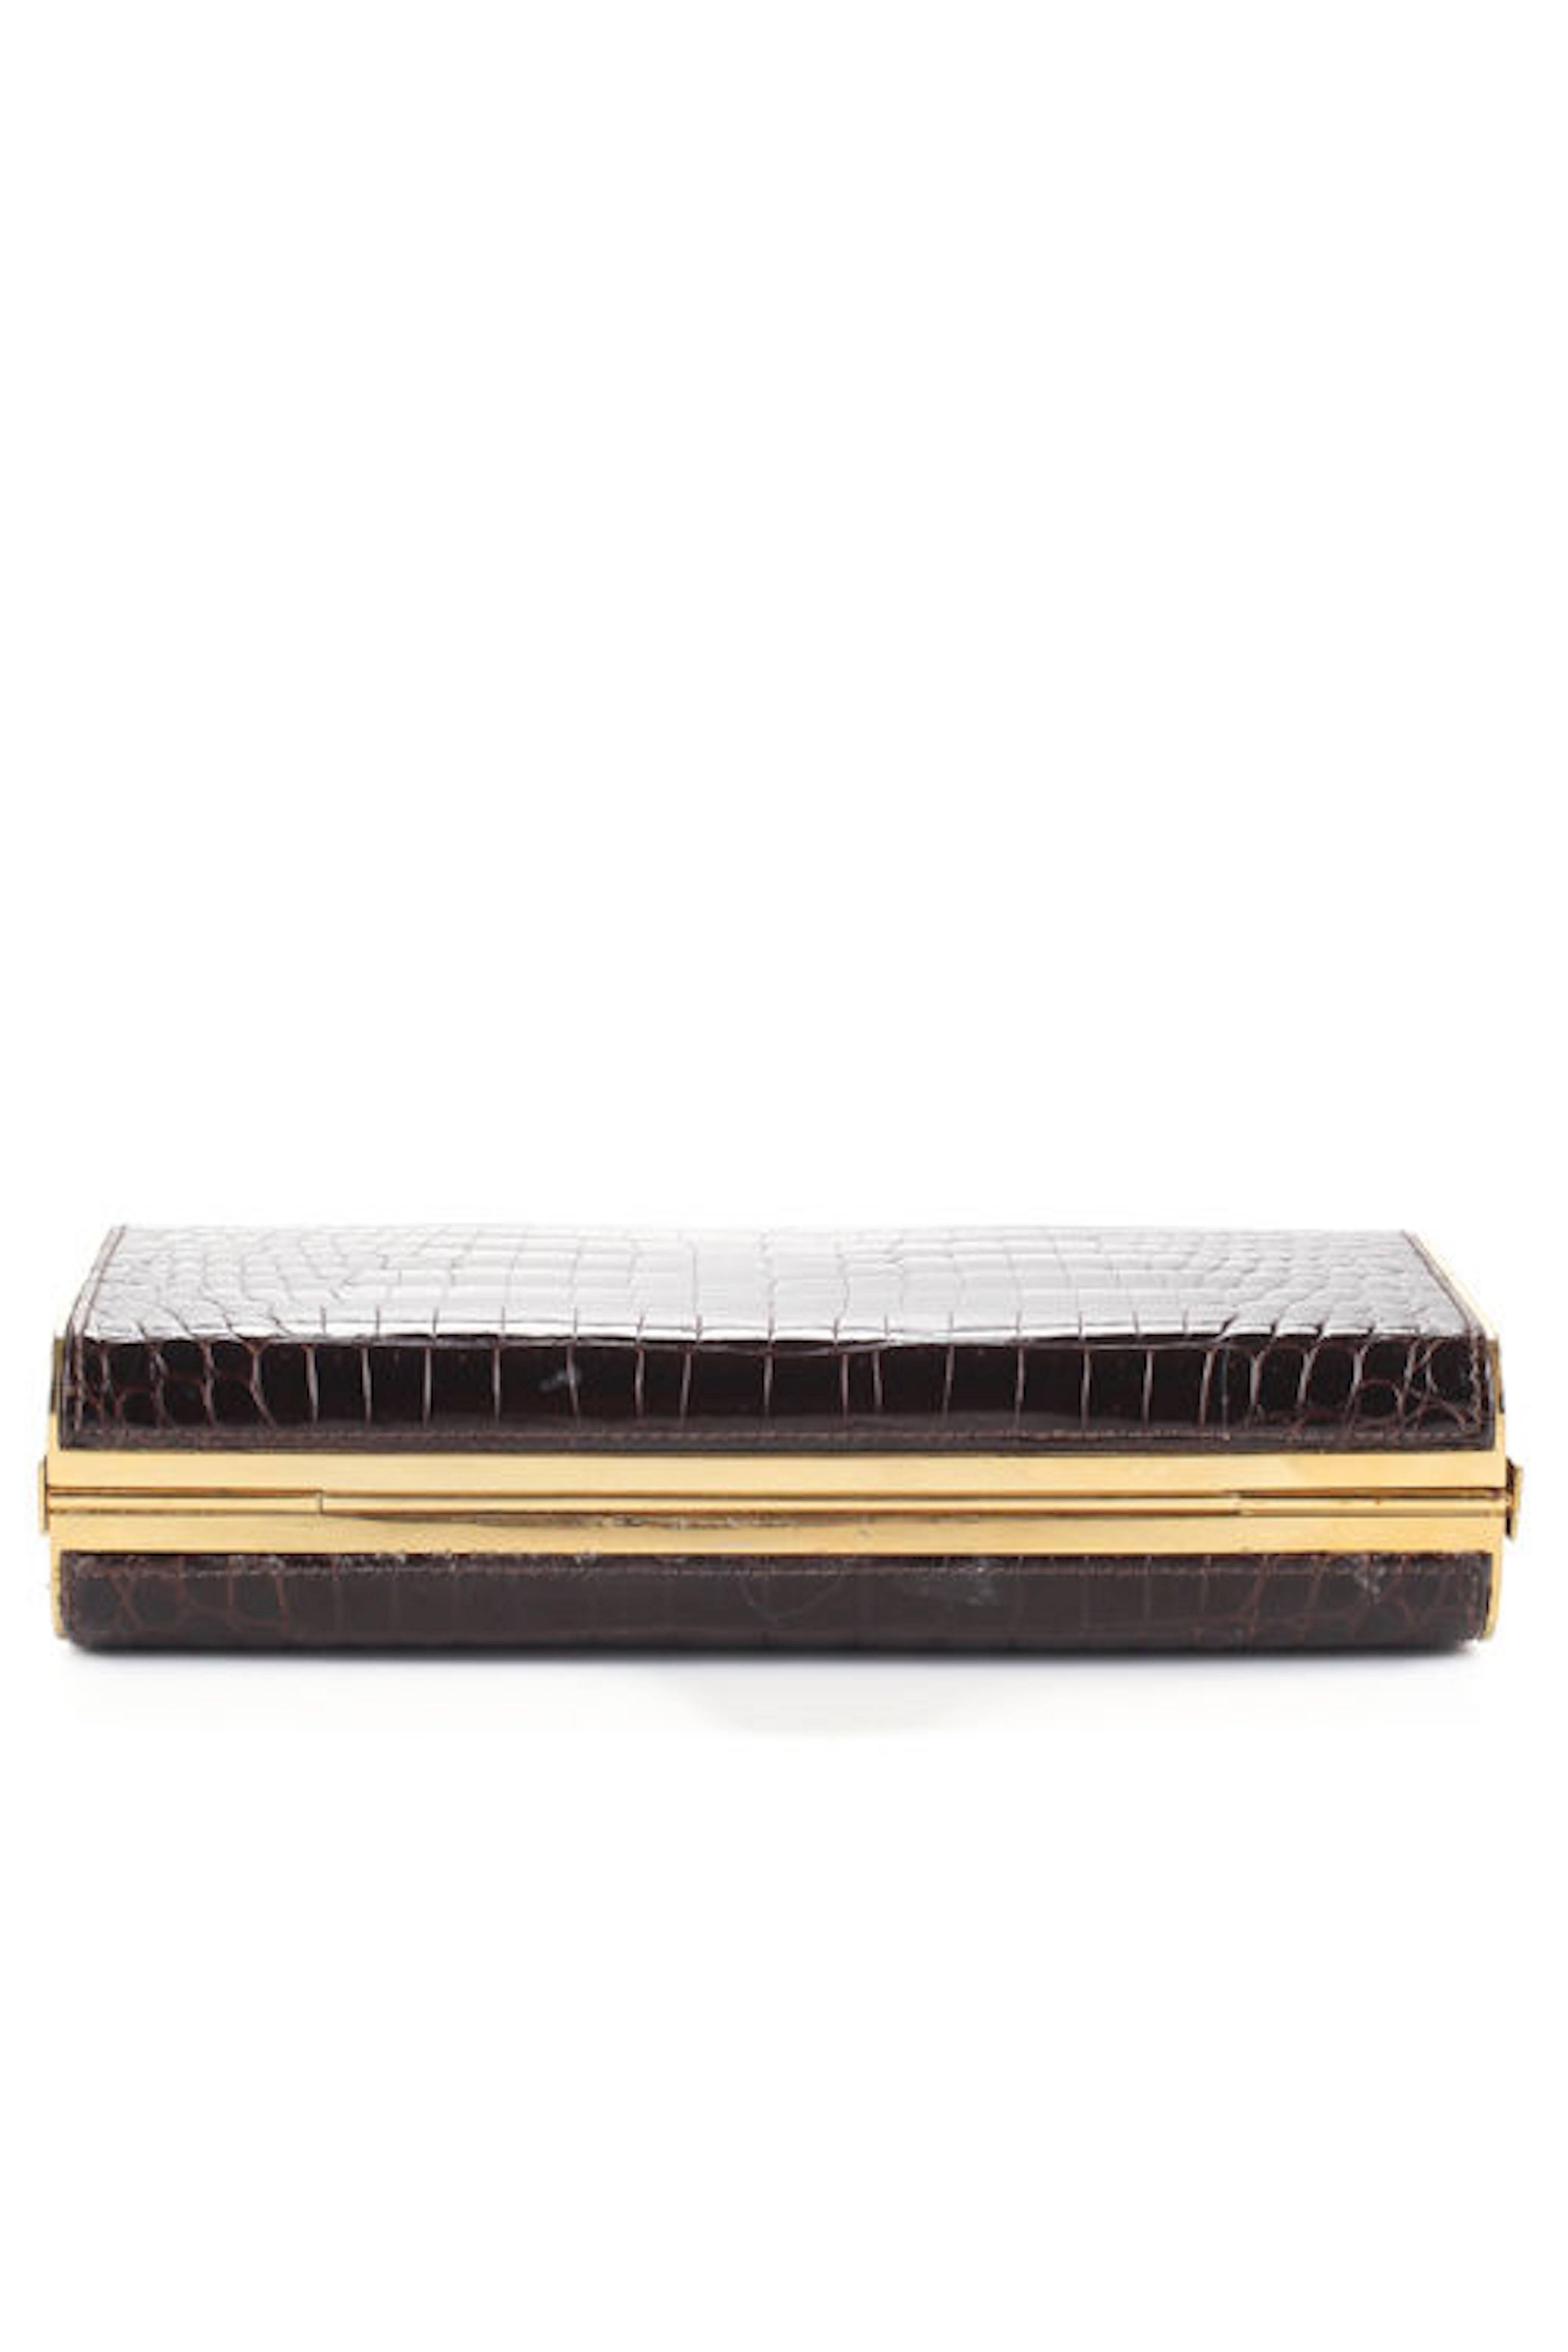 Black Gucci Vintage Alligator Gold Kisslock 2 in 1 Shoulder Bag Box Evening Clutch 